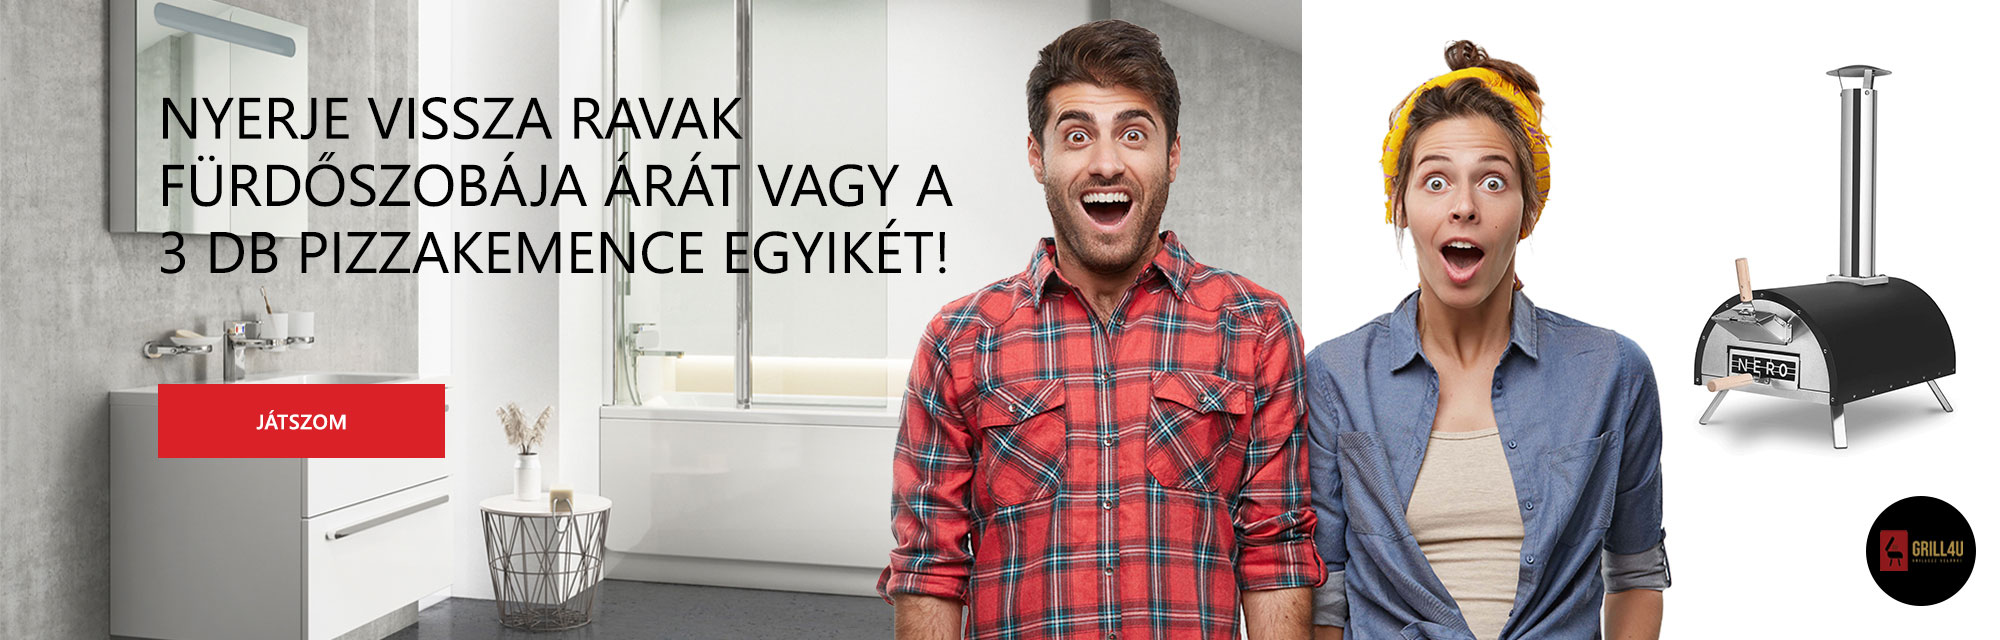 RAVAK fürdőszoba nyereményjáték - RAVAK Hungary Kft.